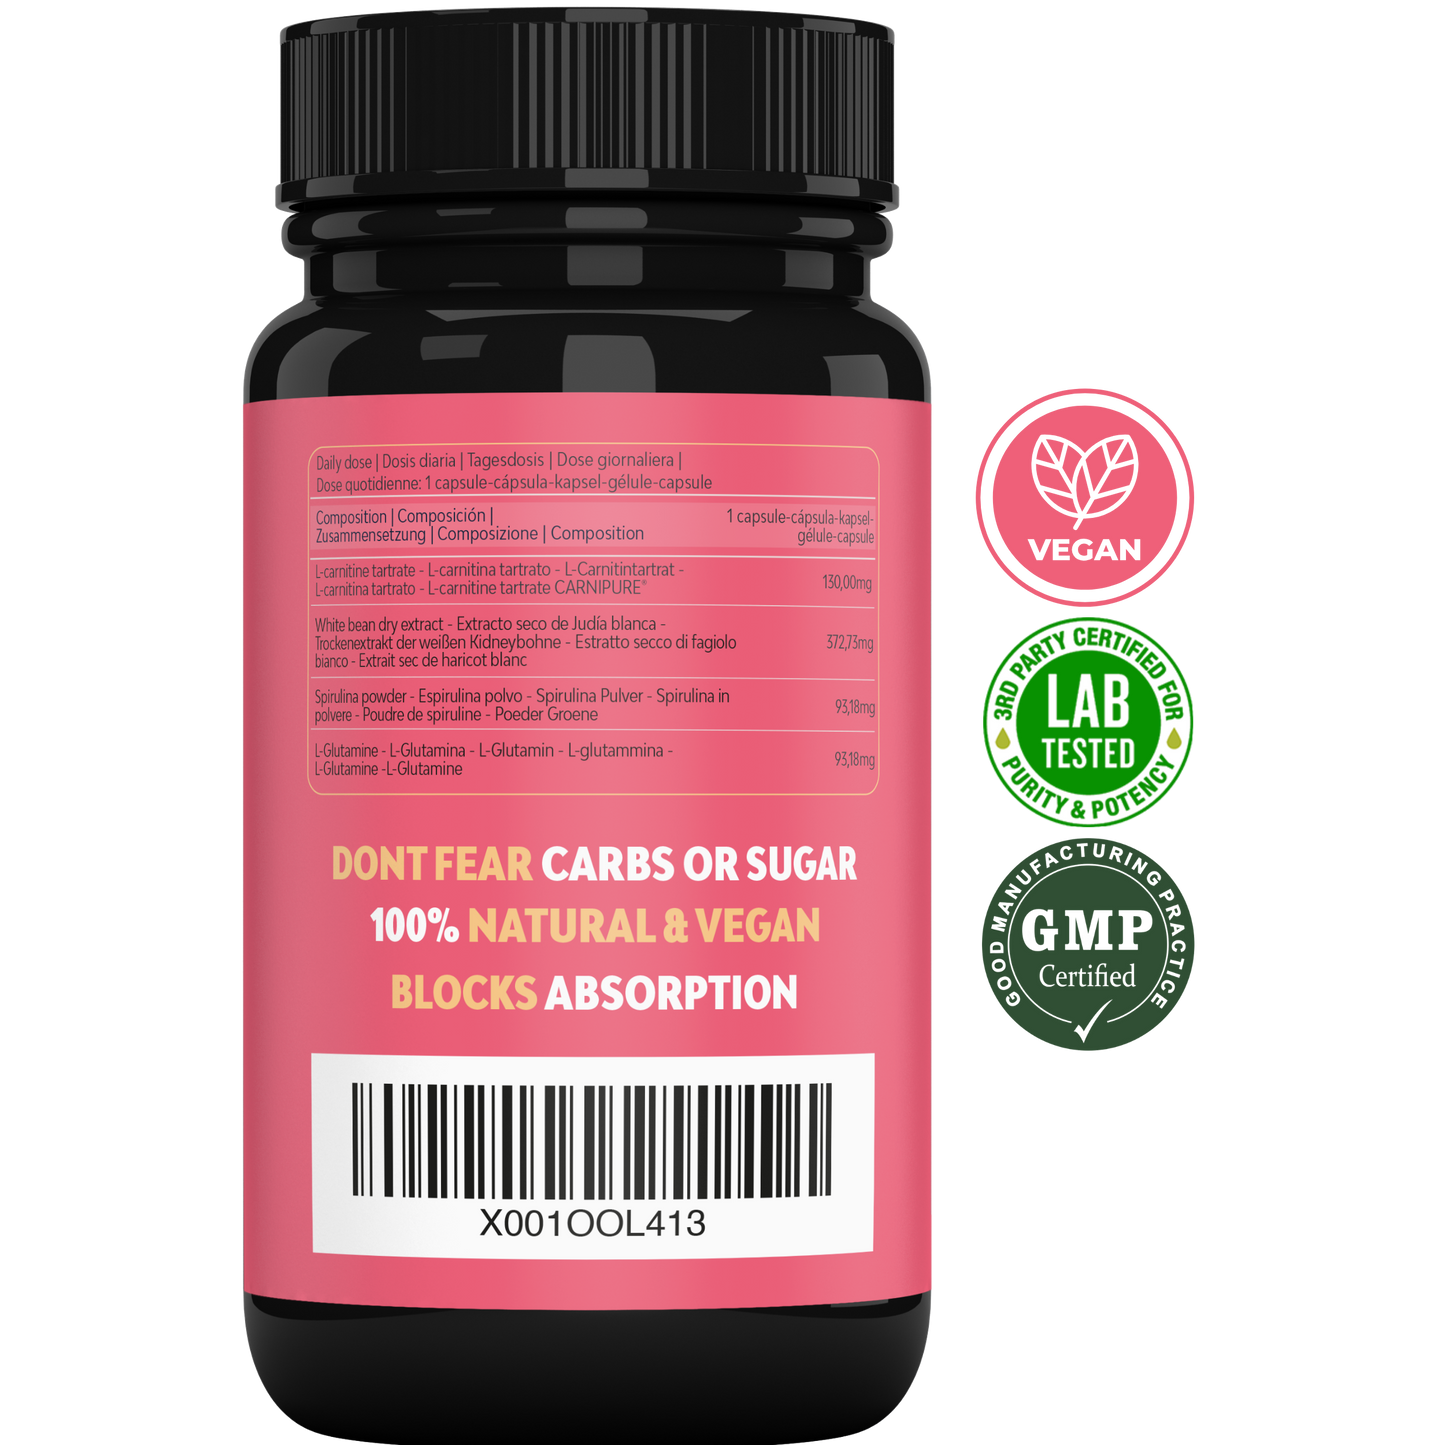 L-Carnitina CARNIPURE® Quemagrasas BLOCK+ | Quemador de grasas + Bloqueador de carbohidratos 90% + Antioxidante + Protector gastrointestinal 